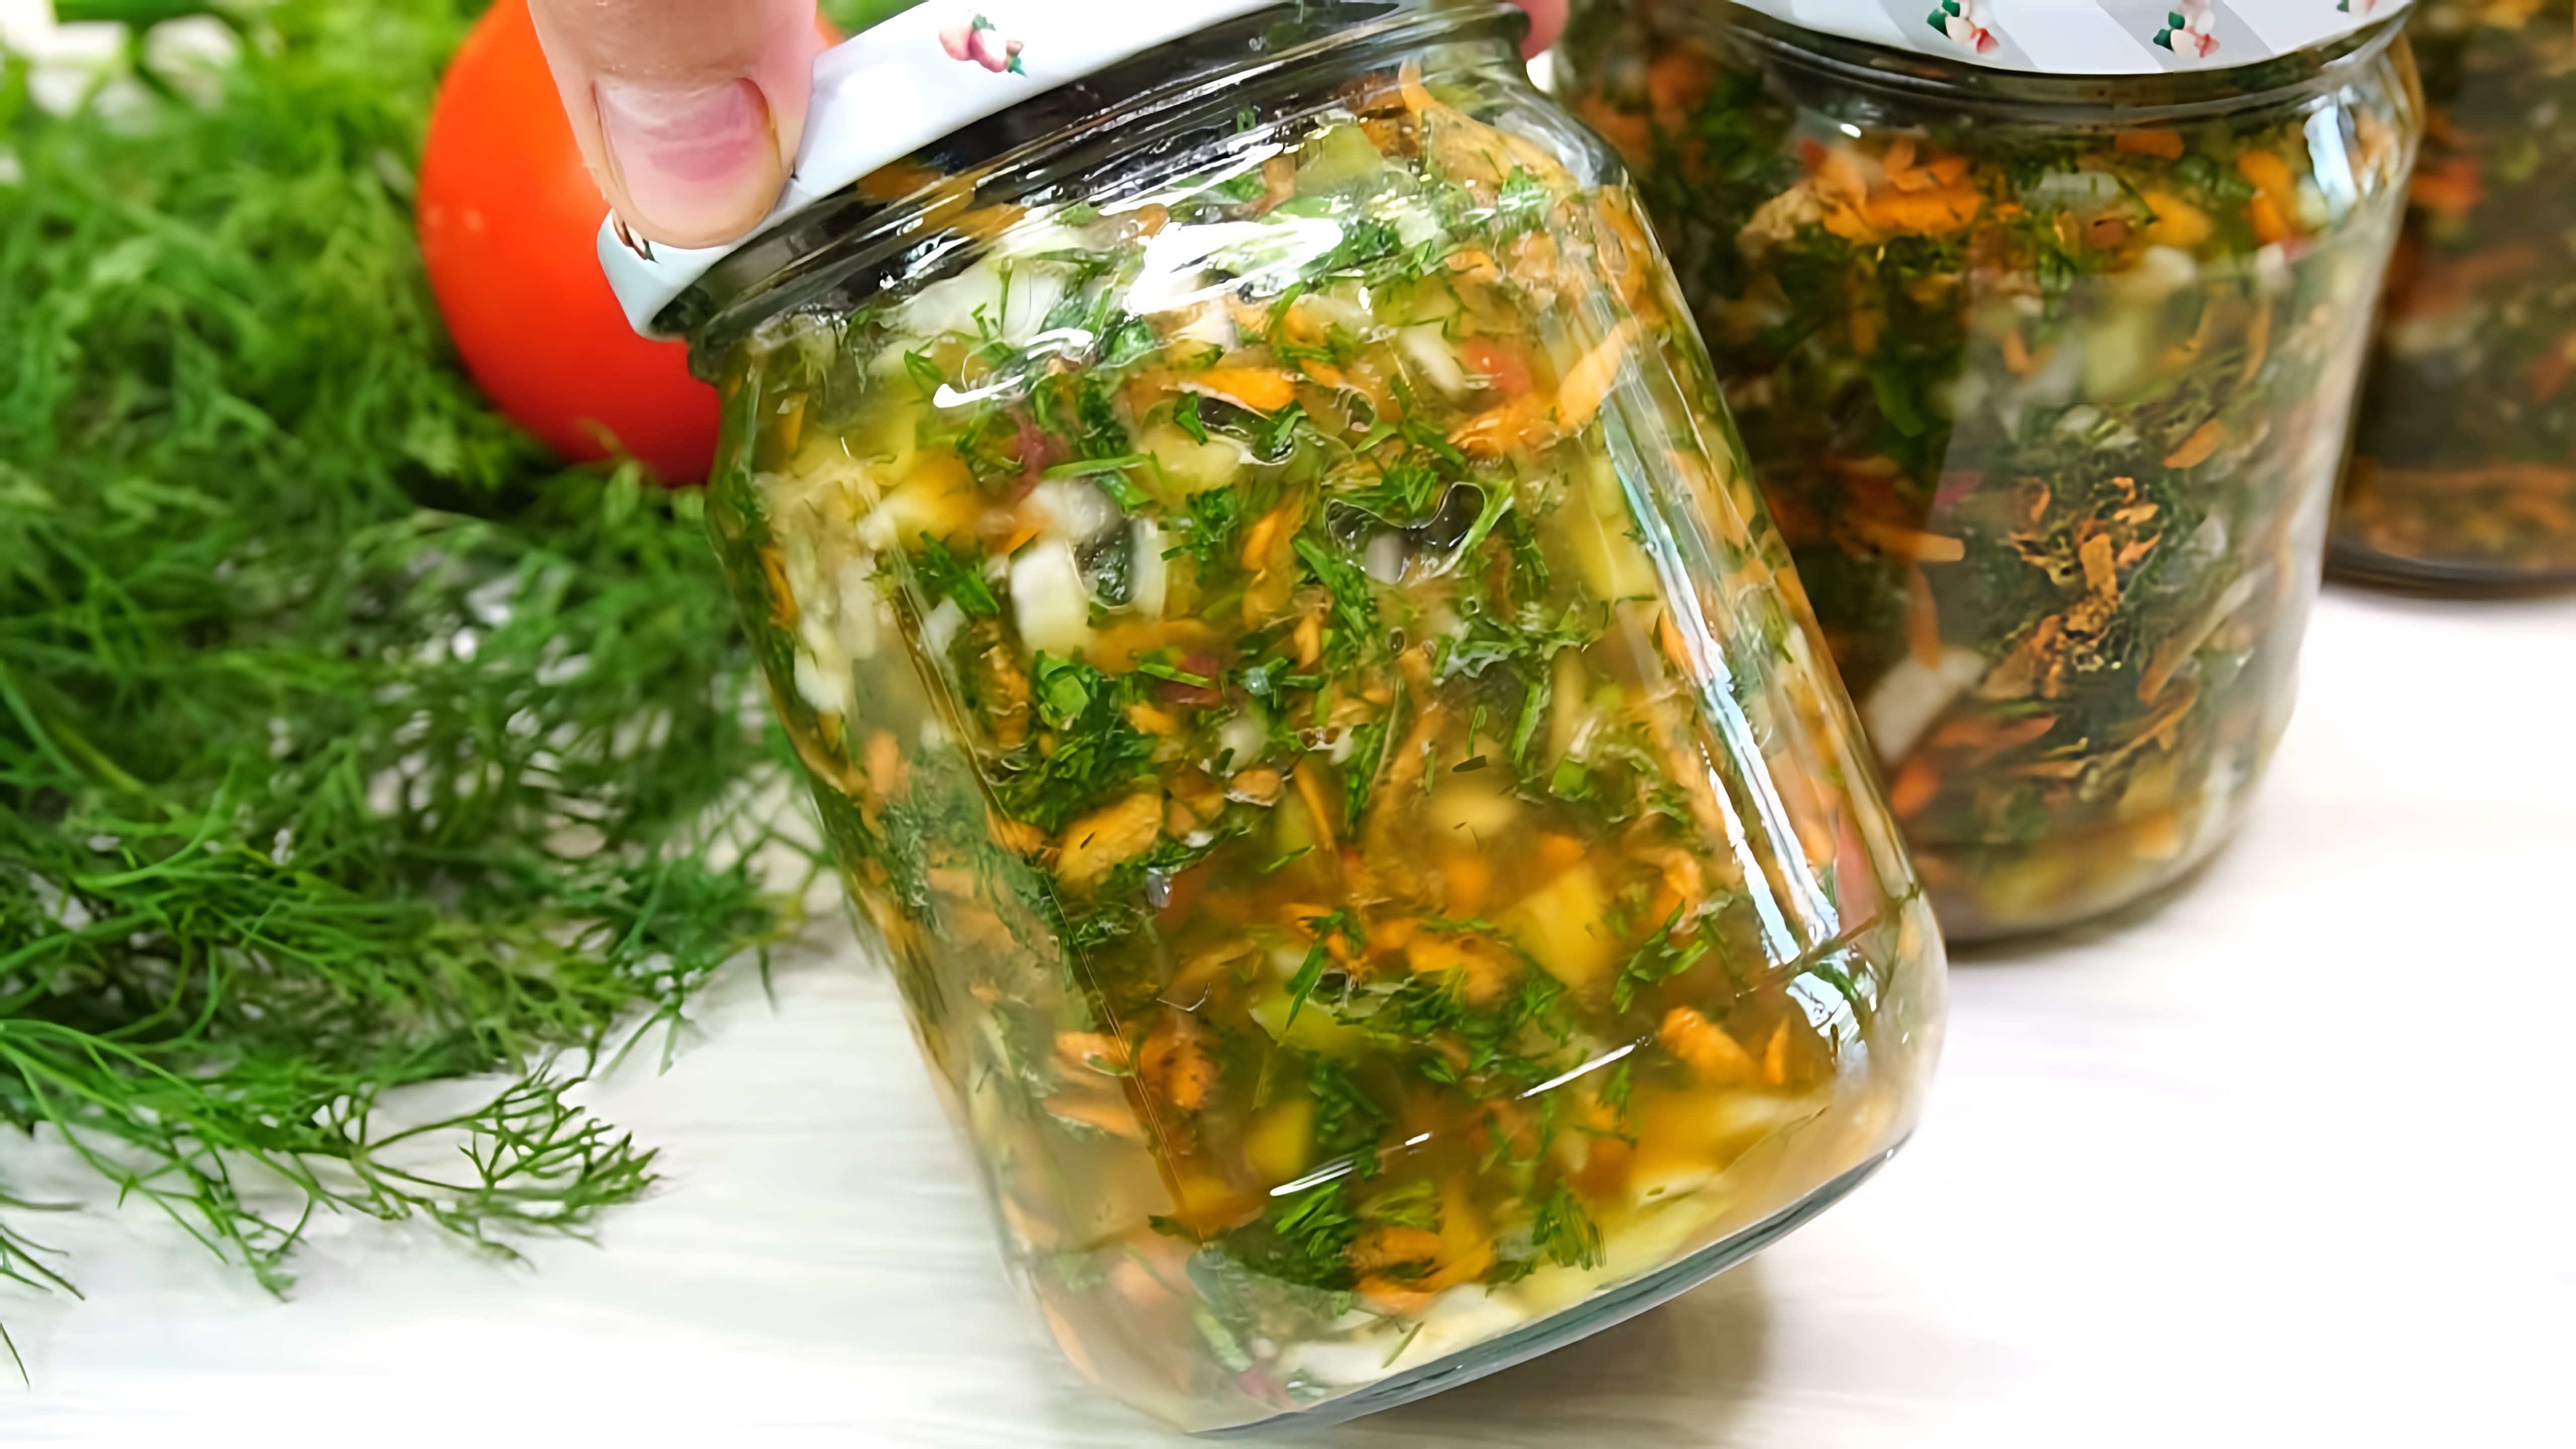 Видео как приготовить овощной консервант/приправу для добавления в супы зимой без консервирования или стерилизации